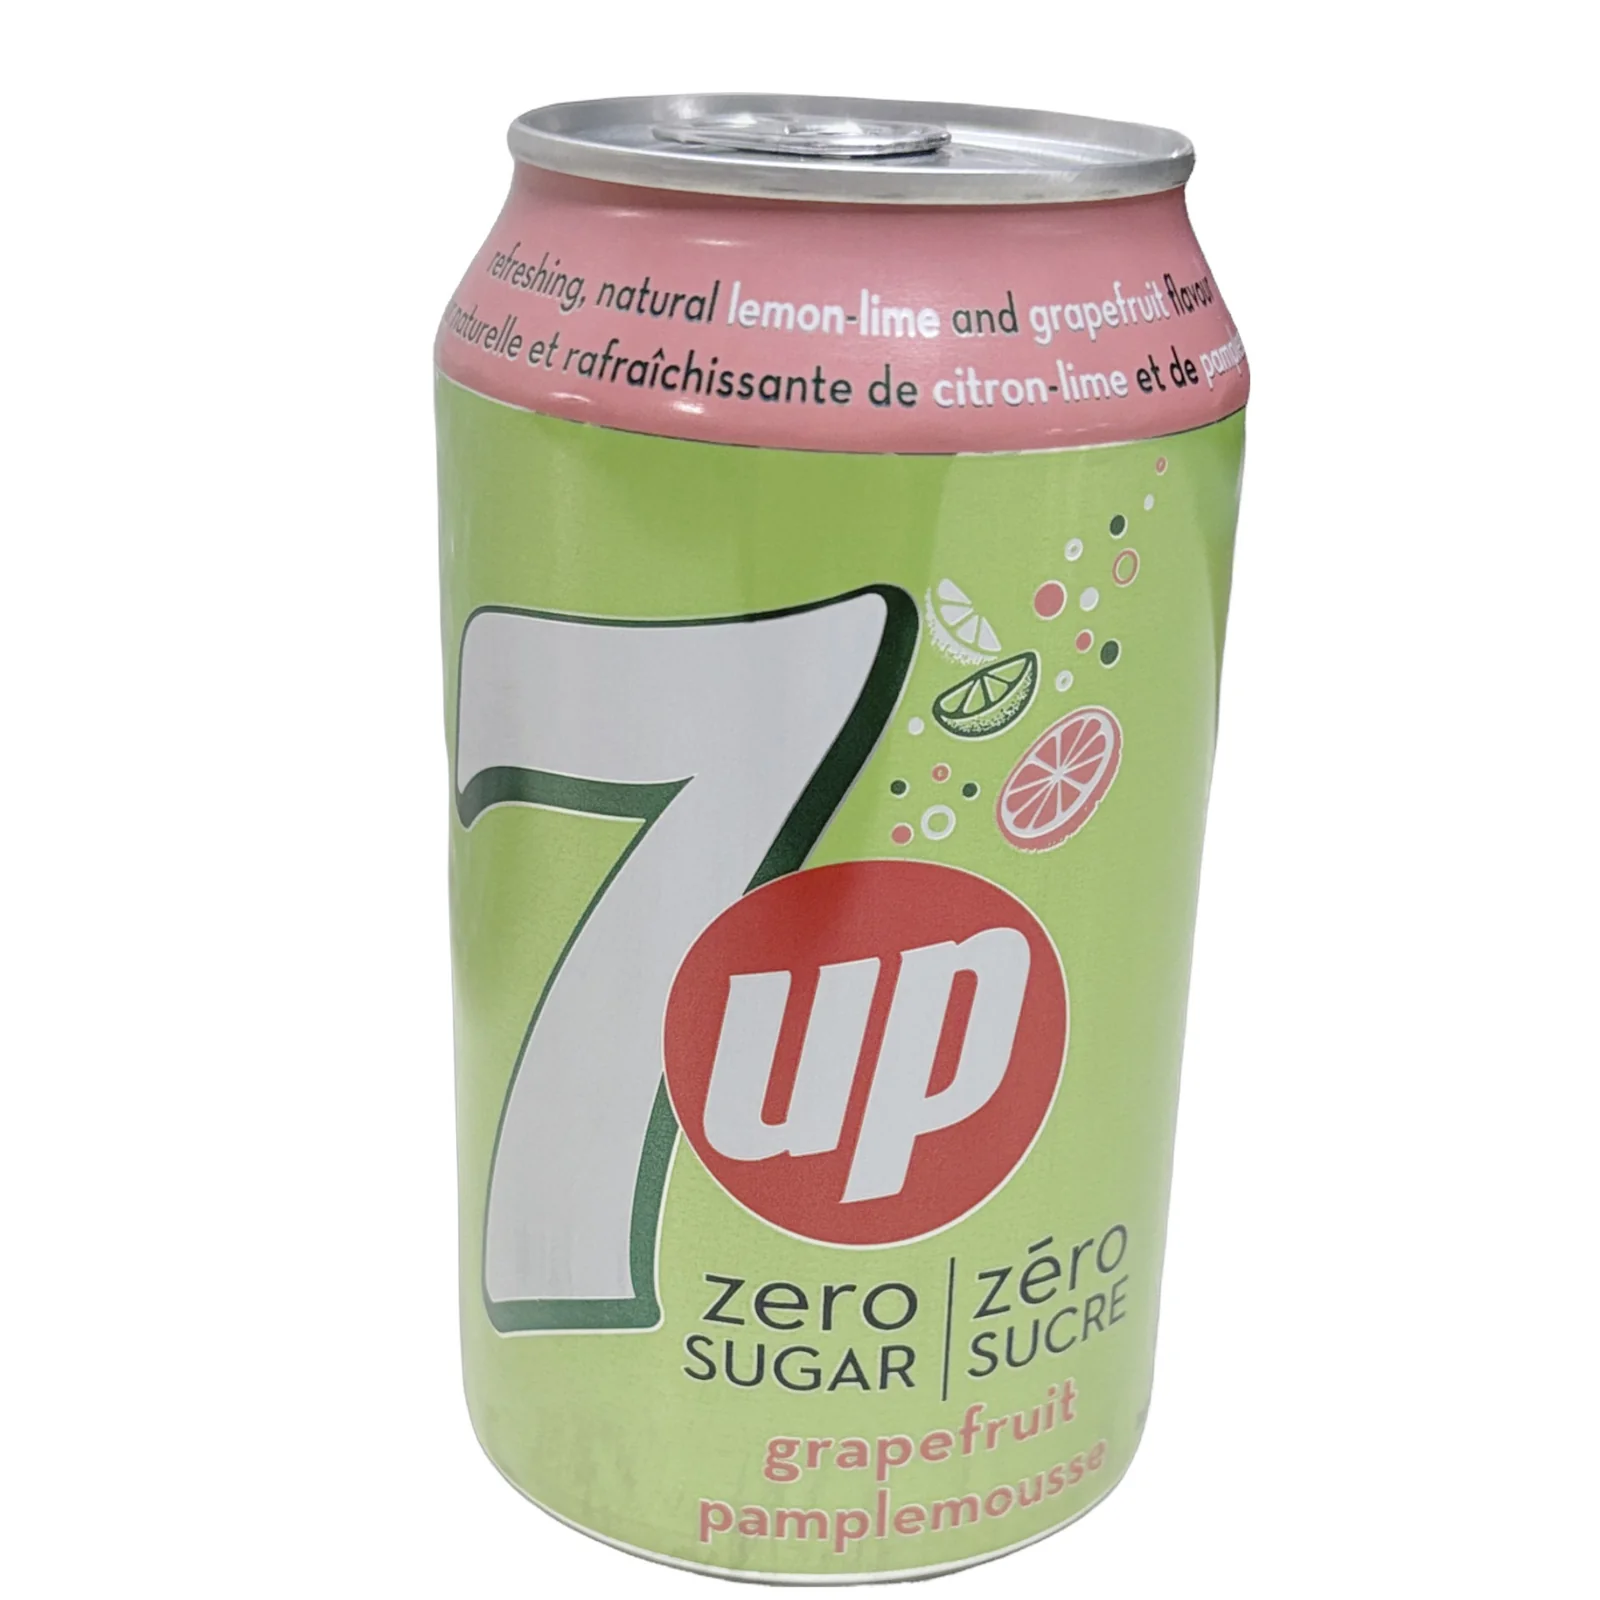 Photo of 7Up Zero Sugar Grapefruit